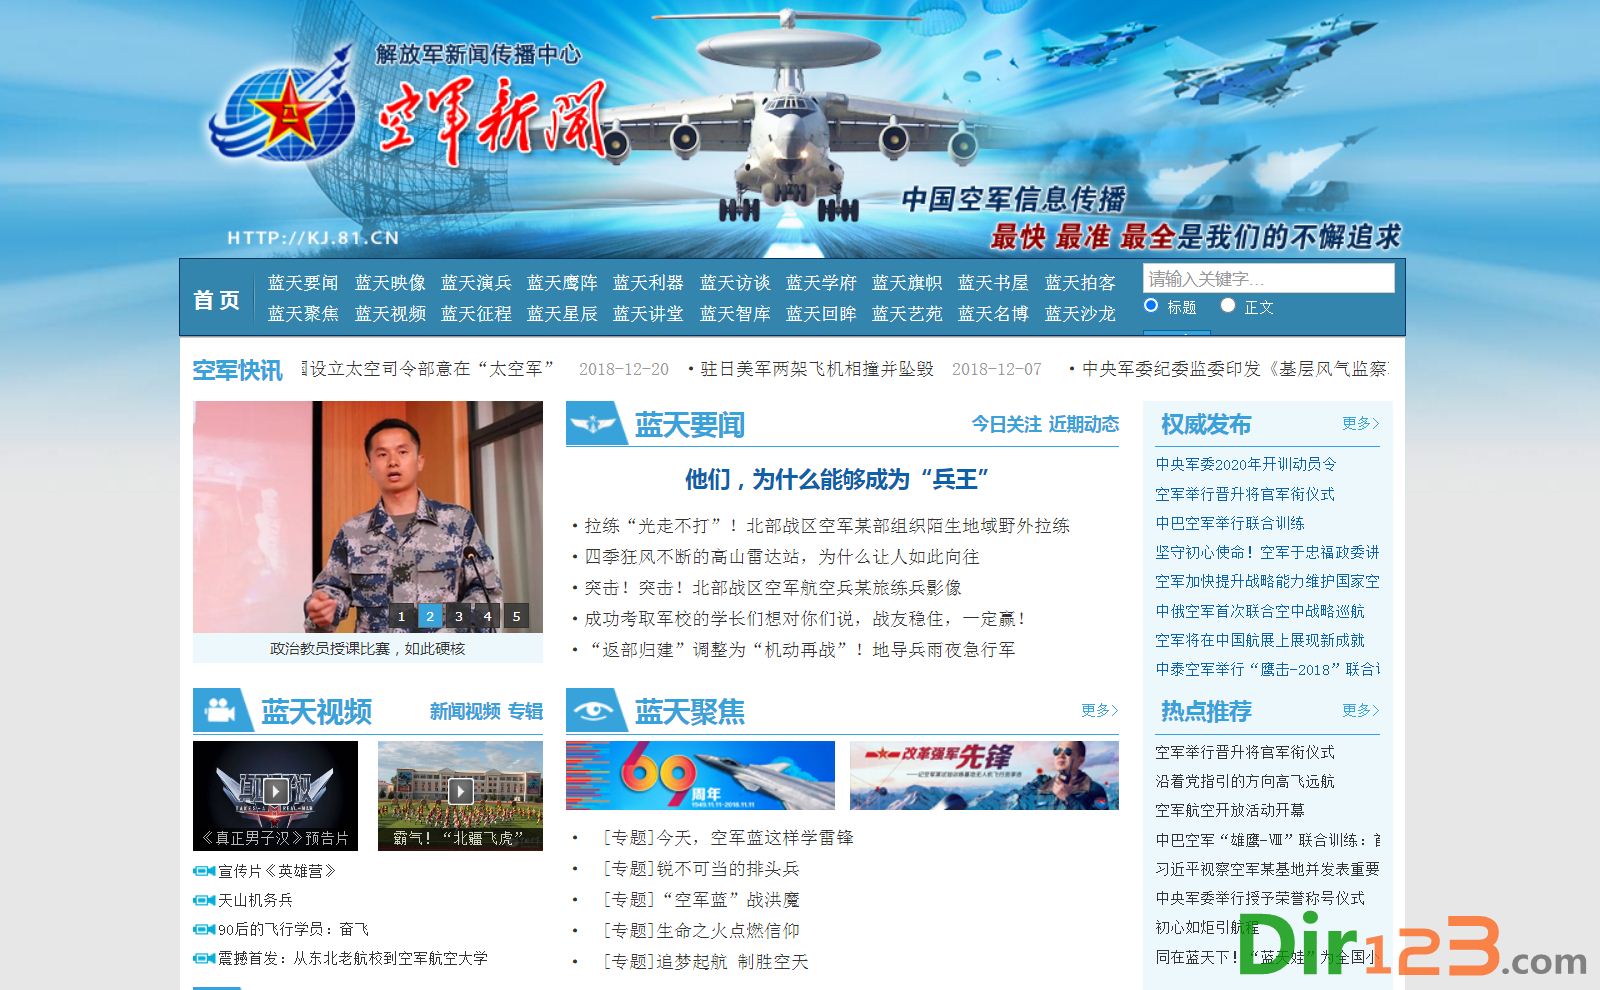 韩美11日正式大规模军演 朝媒称已进入大决战前夕 - 新闻 - 加拿大华人网 - 加拿大华人门户网站